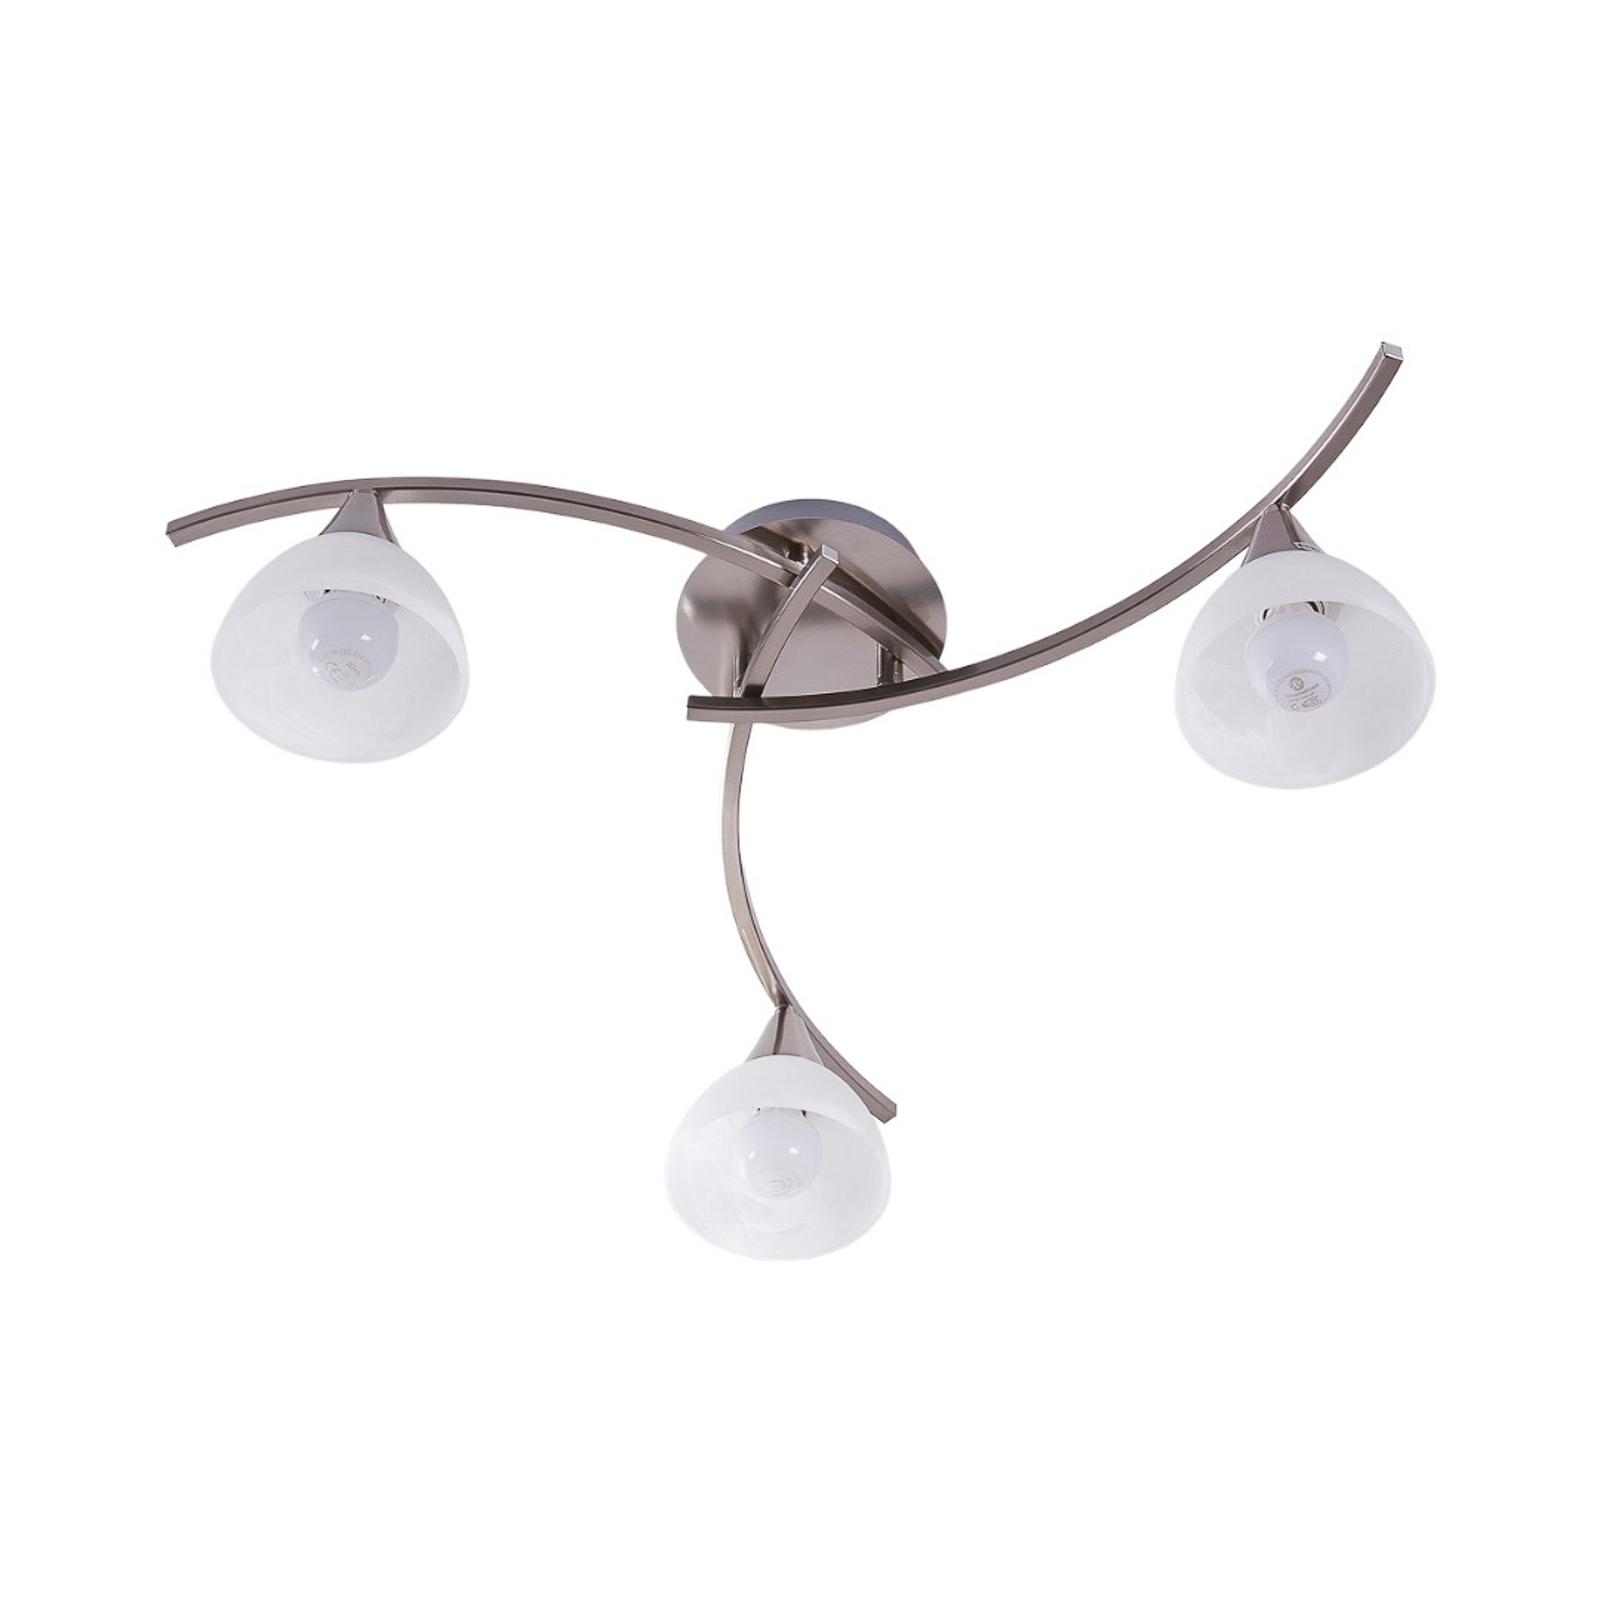 Della - Таванска лампа, матов никел, 3 светлини.